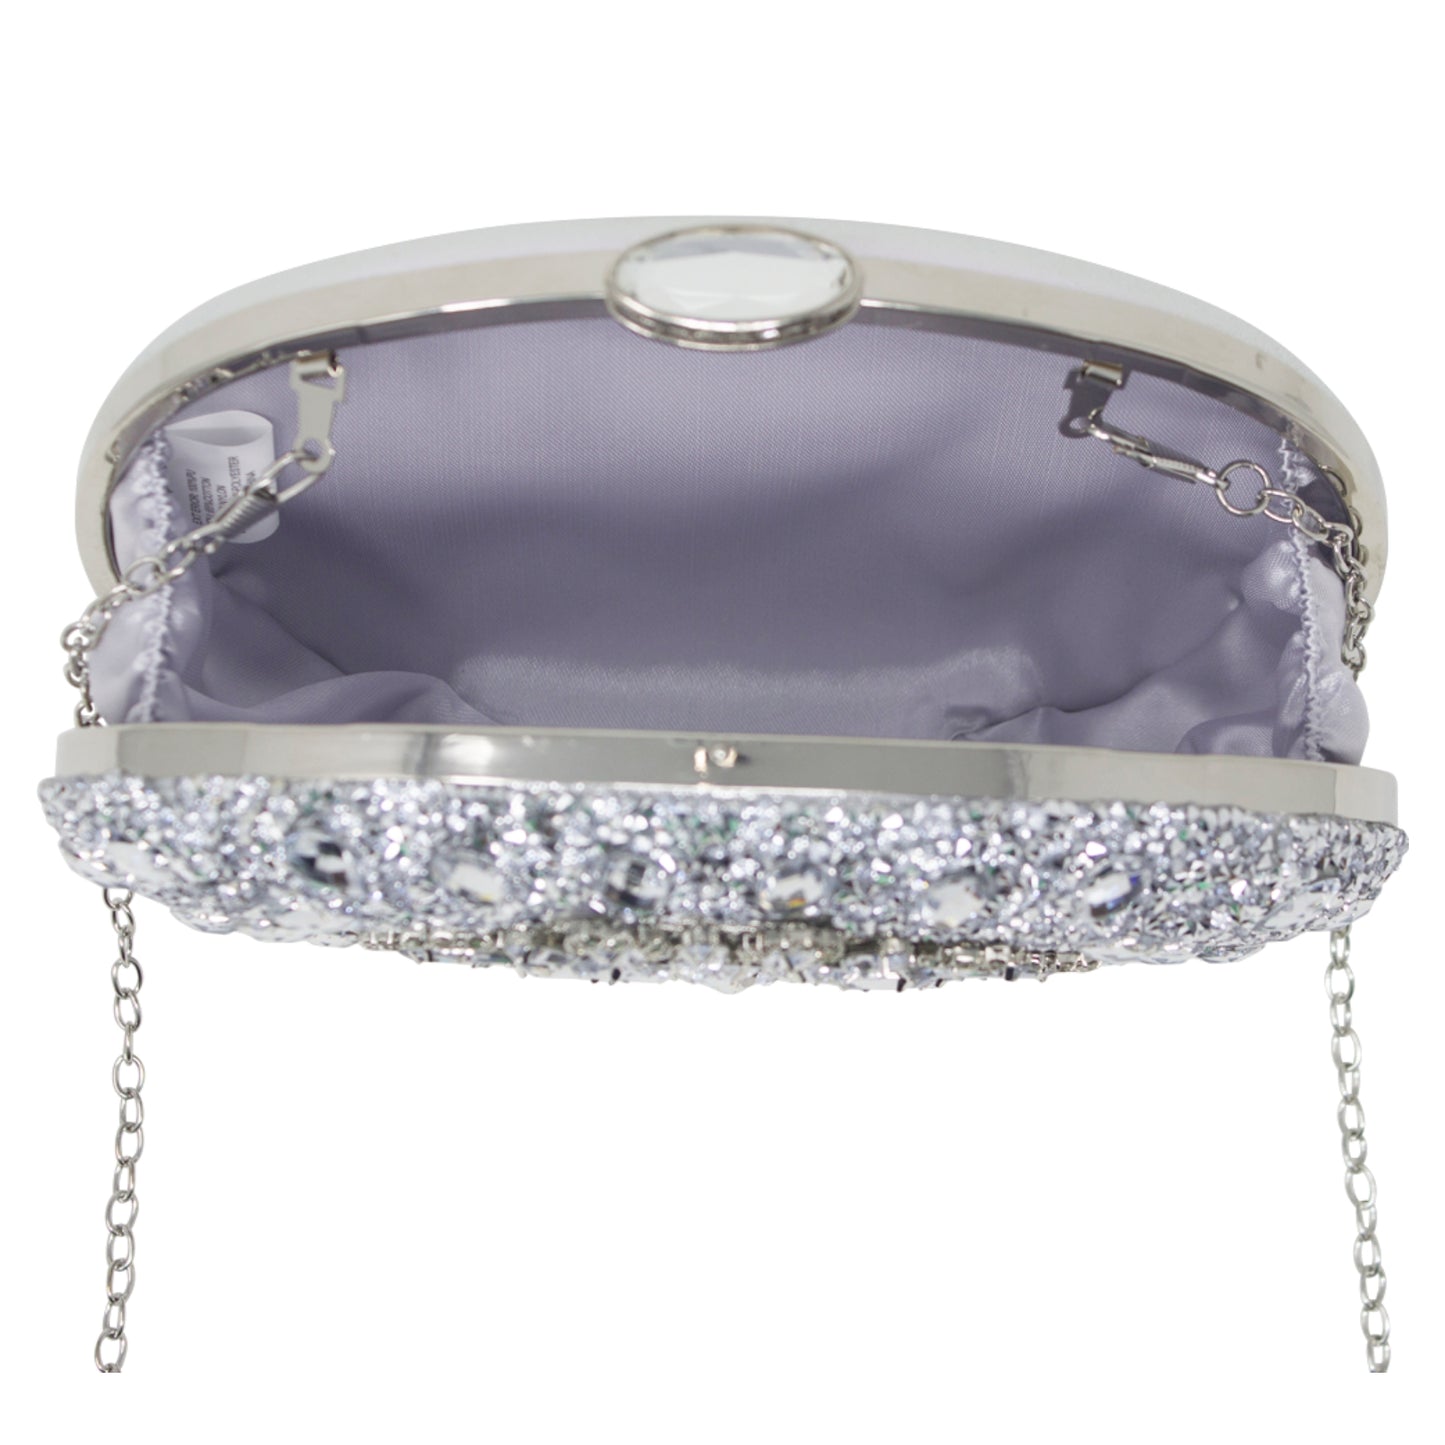 Sparkly Silver Diamante Encrusted Clutch Bag